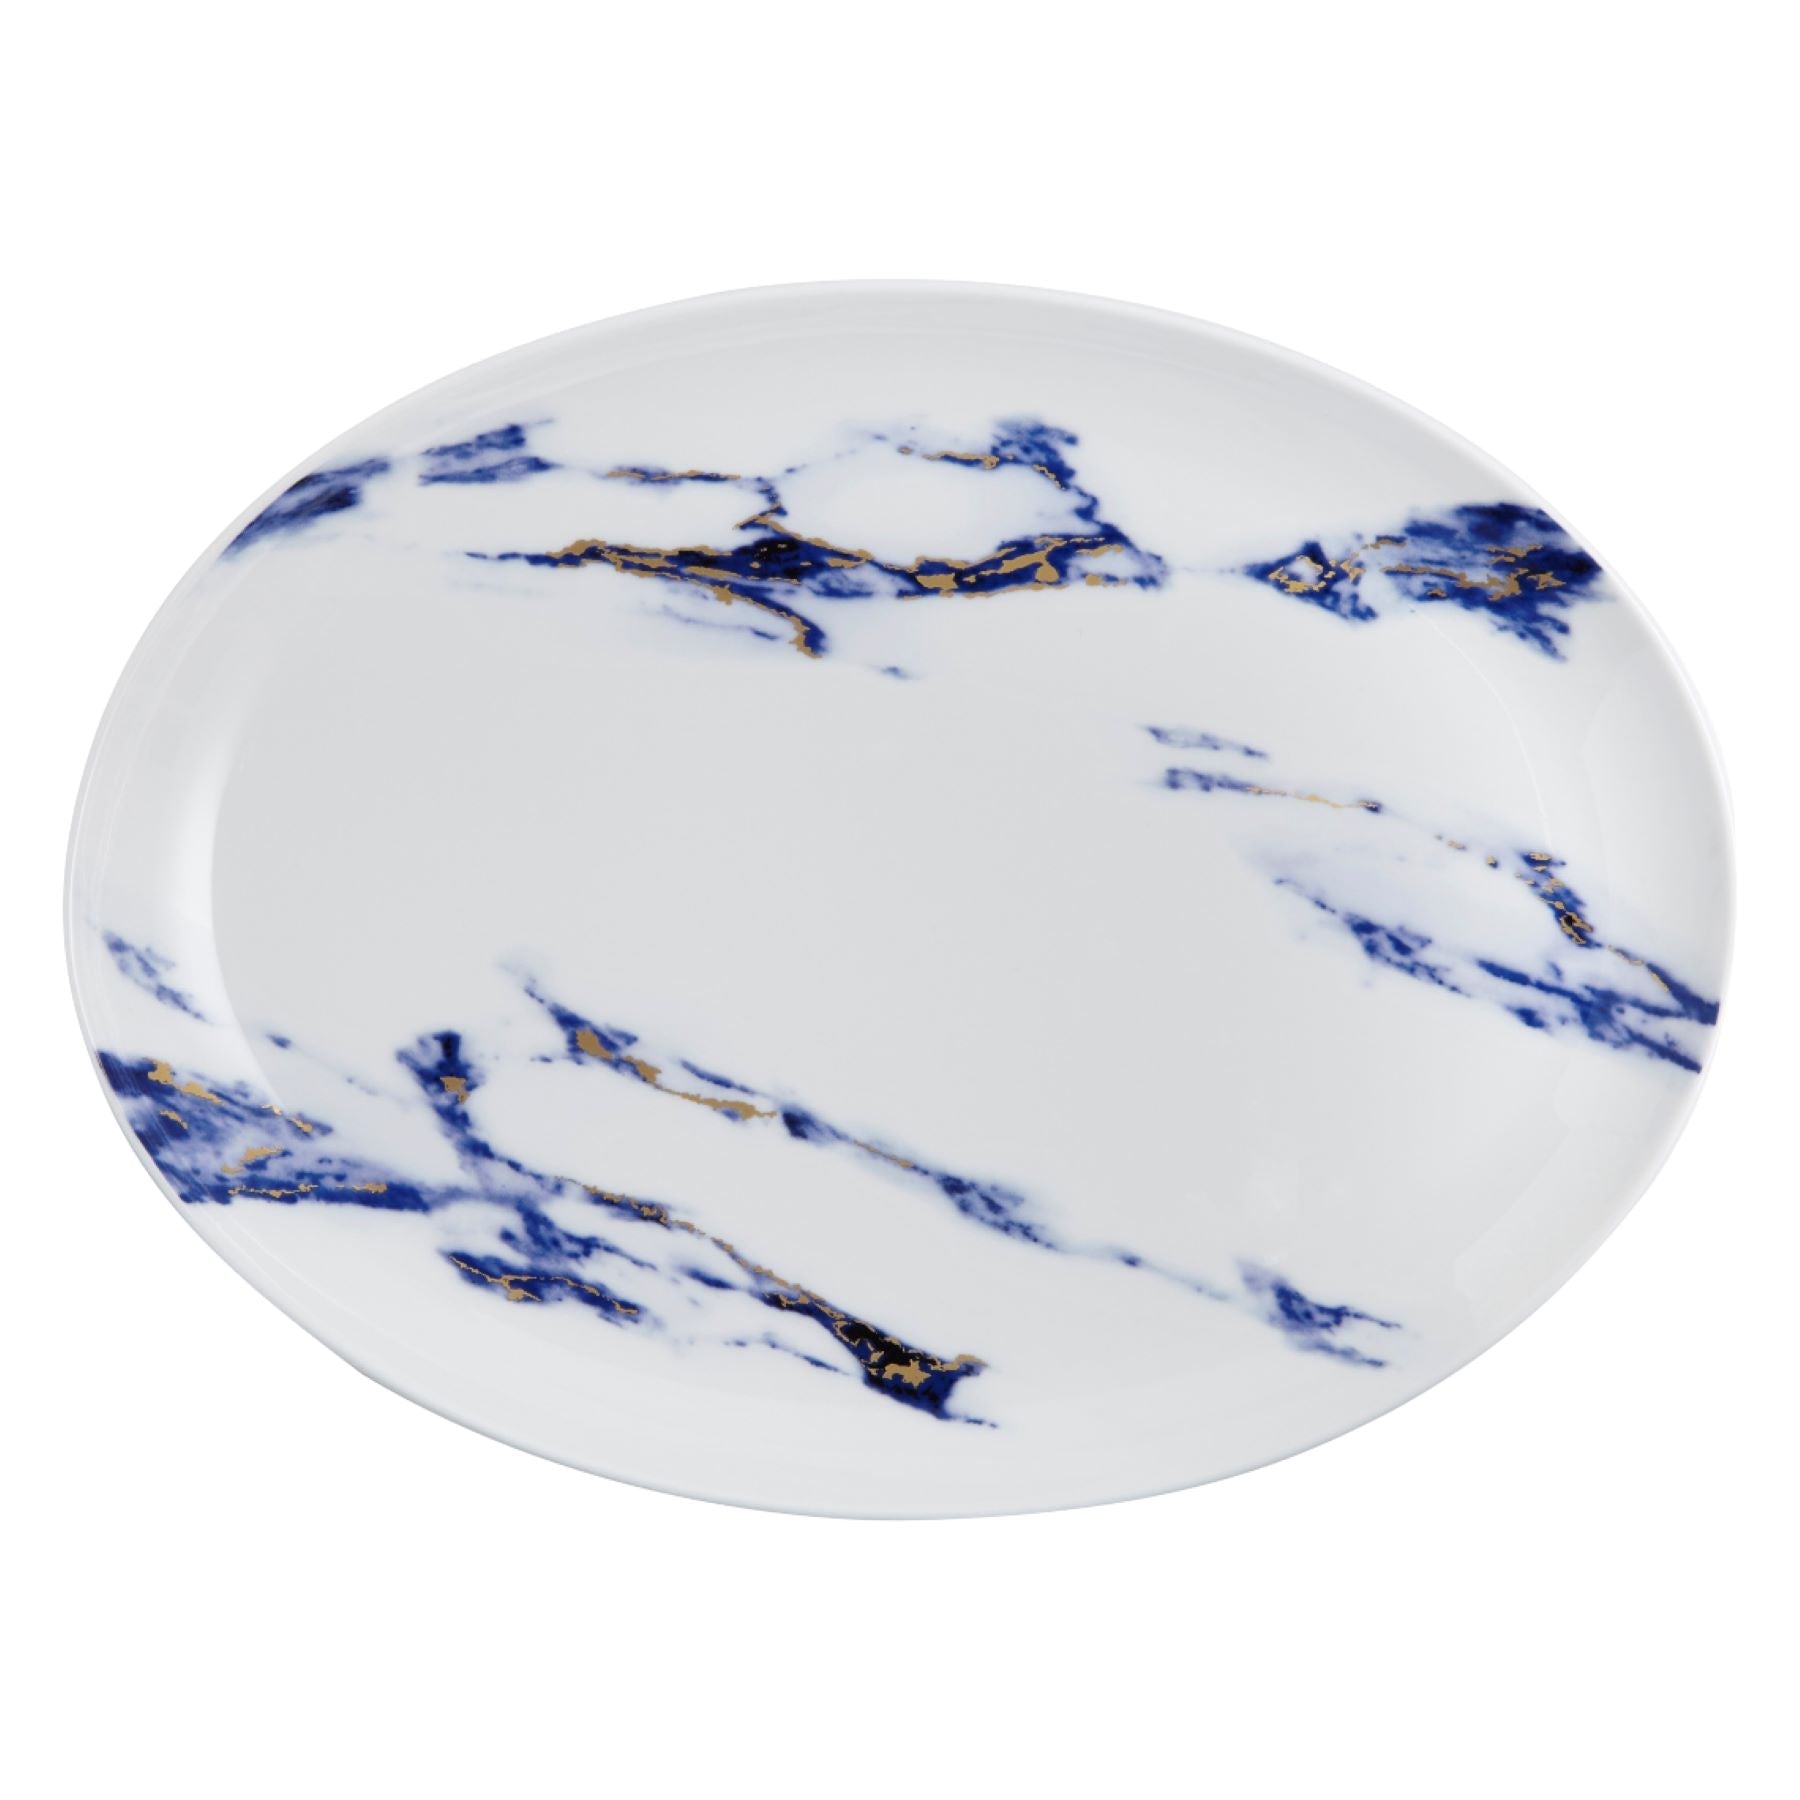 Prouna Marble Azure 14" Oval Platter White Background Photo